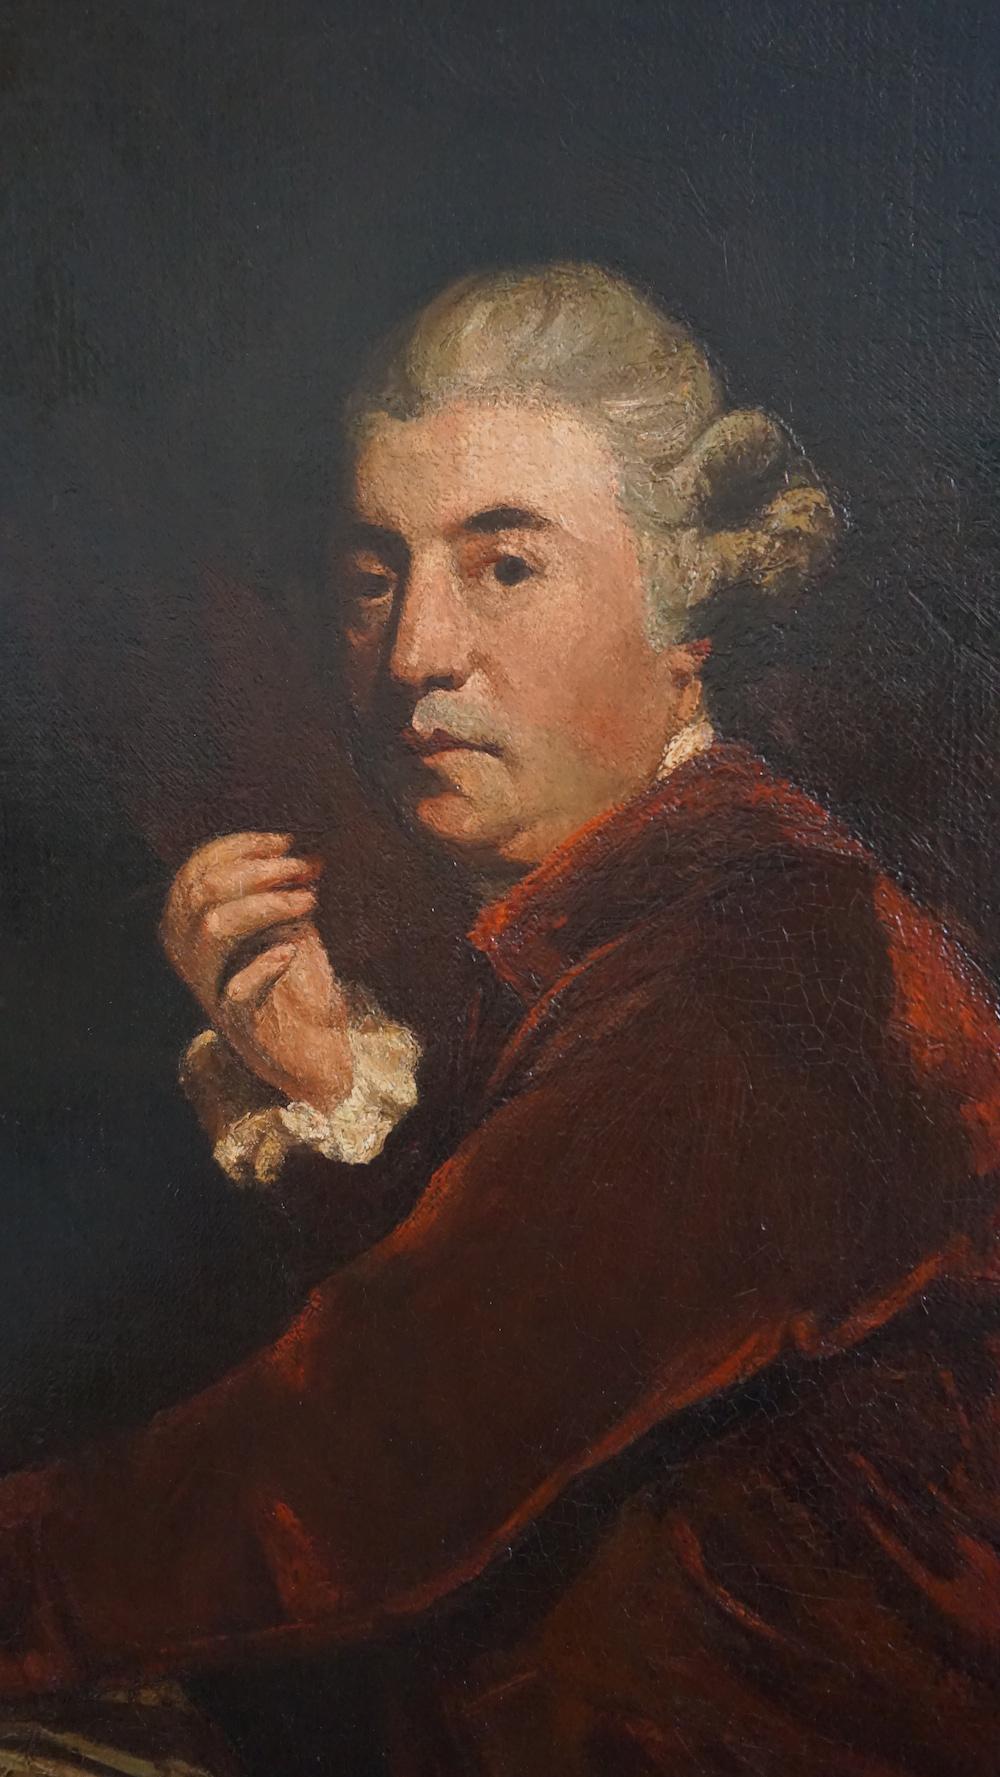 Huile sur toile à chevrons, copie du portrait de l'architecte Sir William Chambers réalisé par Joshua Reynolds en 1779, dont l'original se trouve à la Royal Academy of Arts de Londres. C'est l'une des rares copies connues peintes après la mort de